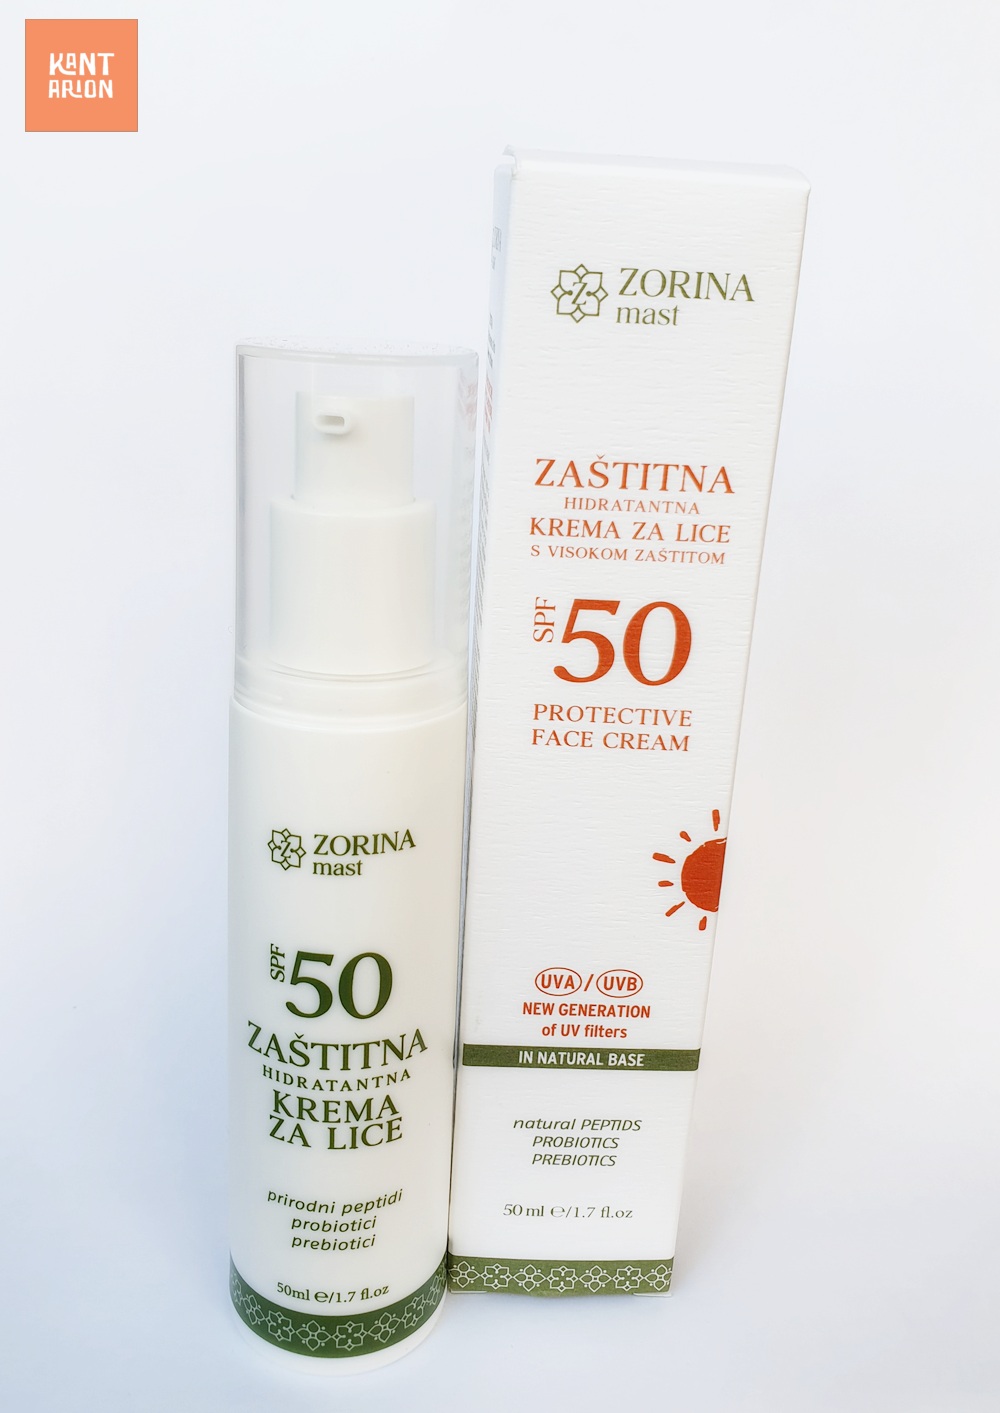 ZORINA MAST – Zaštitna hidratantna krema za lice SPF 50+